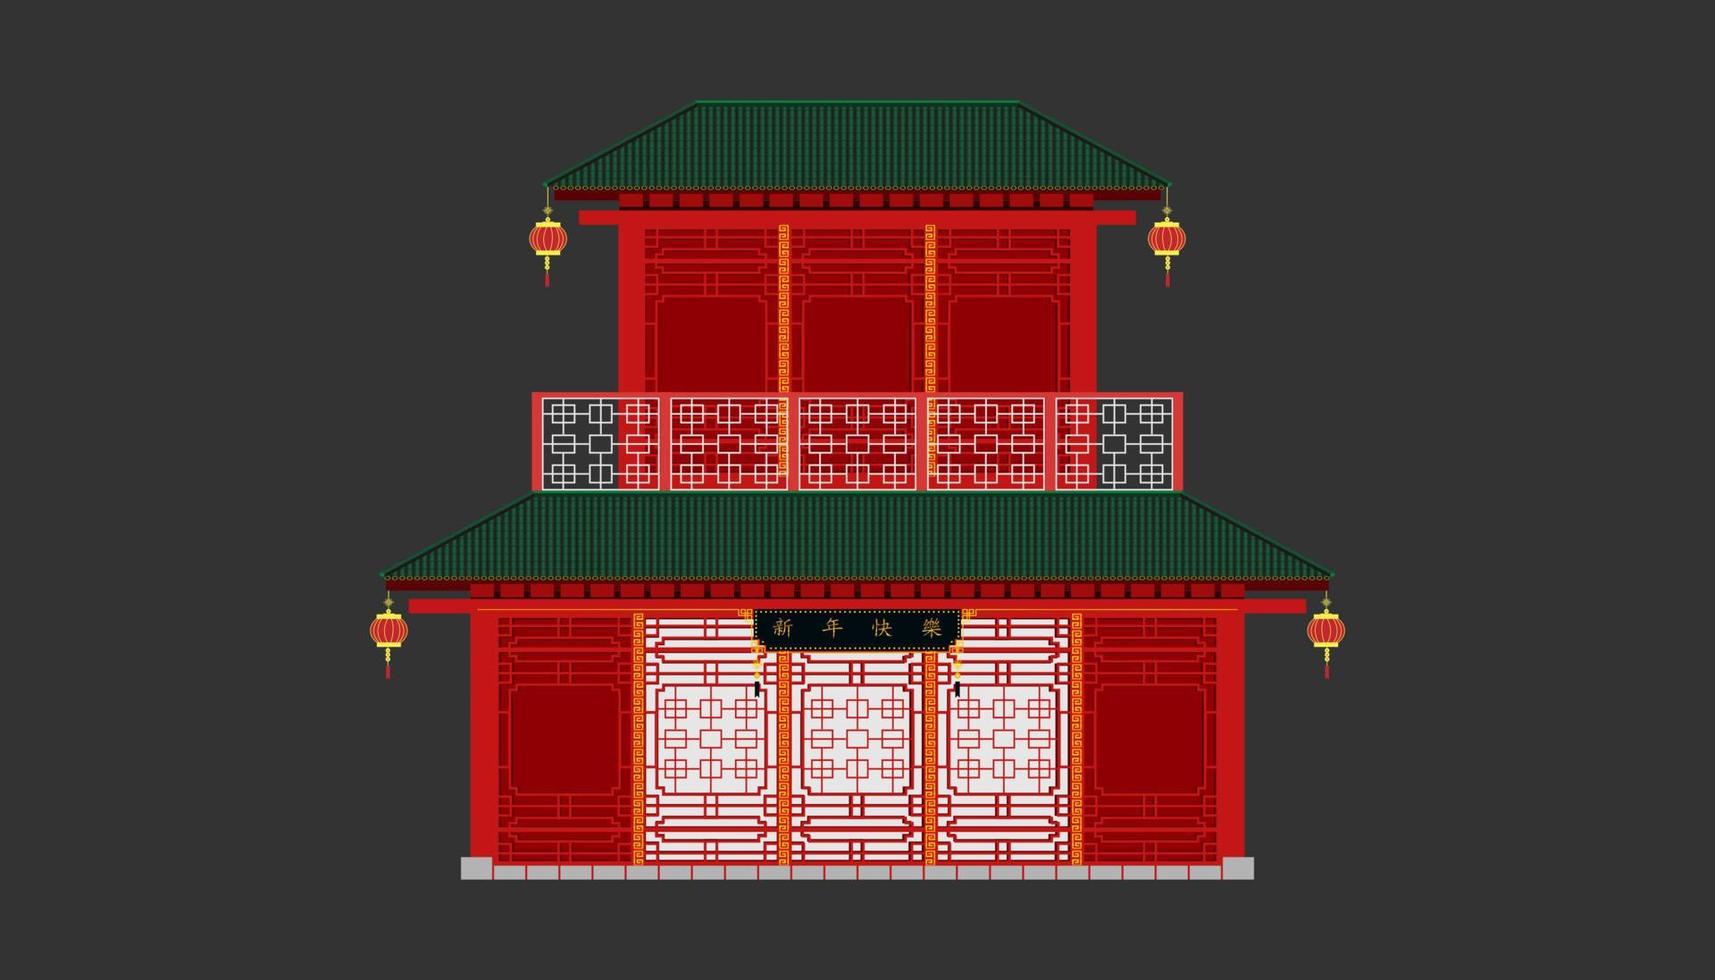 voorkant van rood china huis minimale oude vintage style.happy chinees nieuwjaar. xin nian kual le karakters voor cny festival.holiday categorie. vector